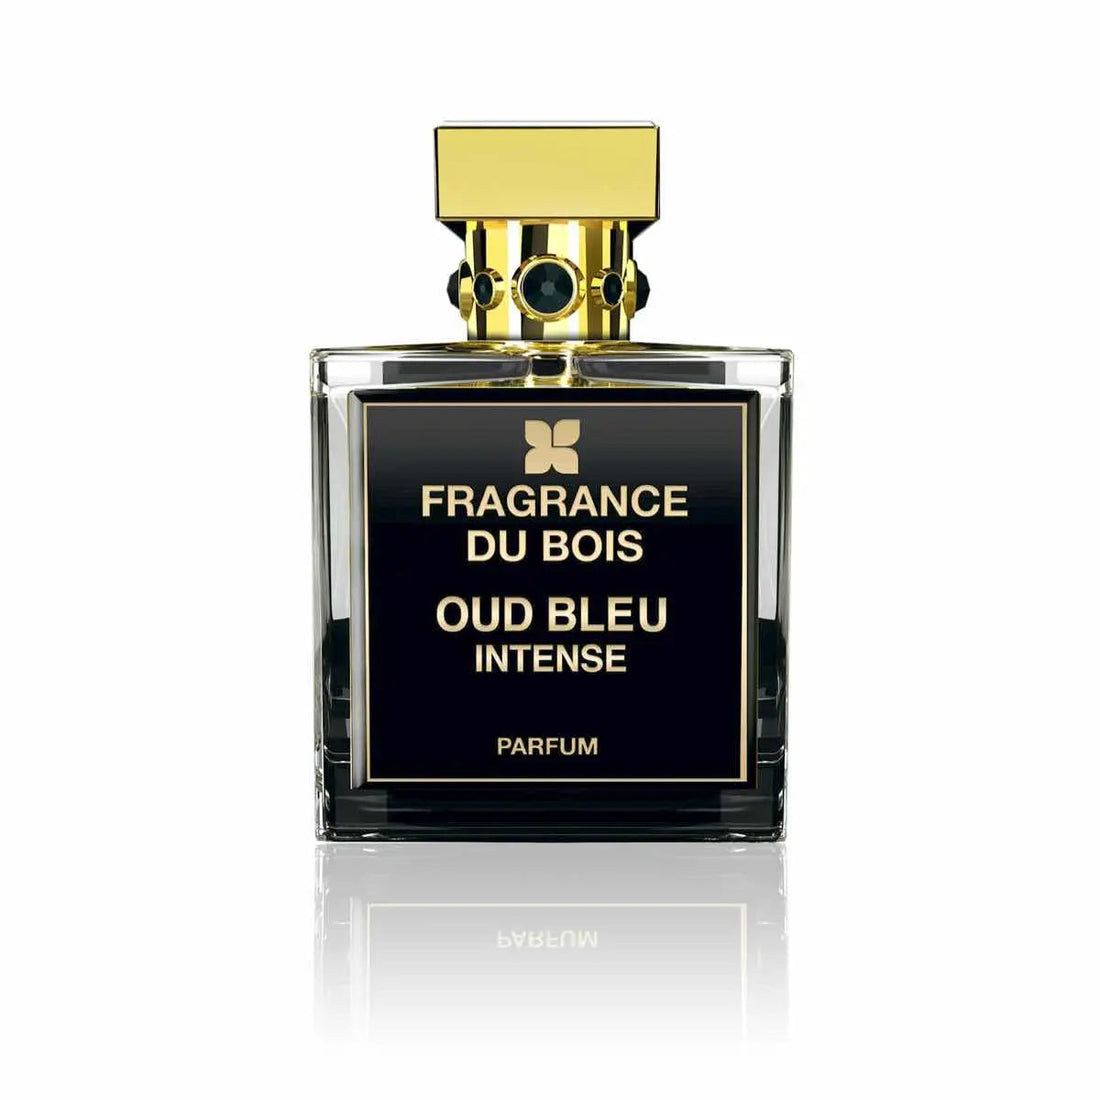 Fragrance du bois Oud Bleu Intense profumo - 50 ml